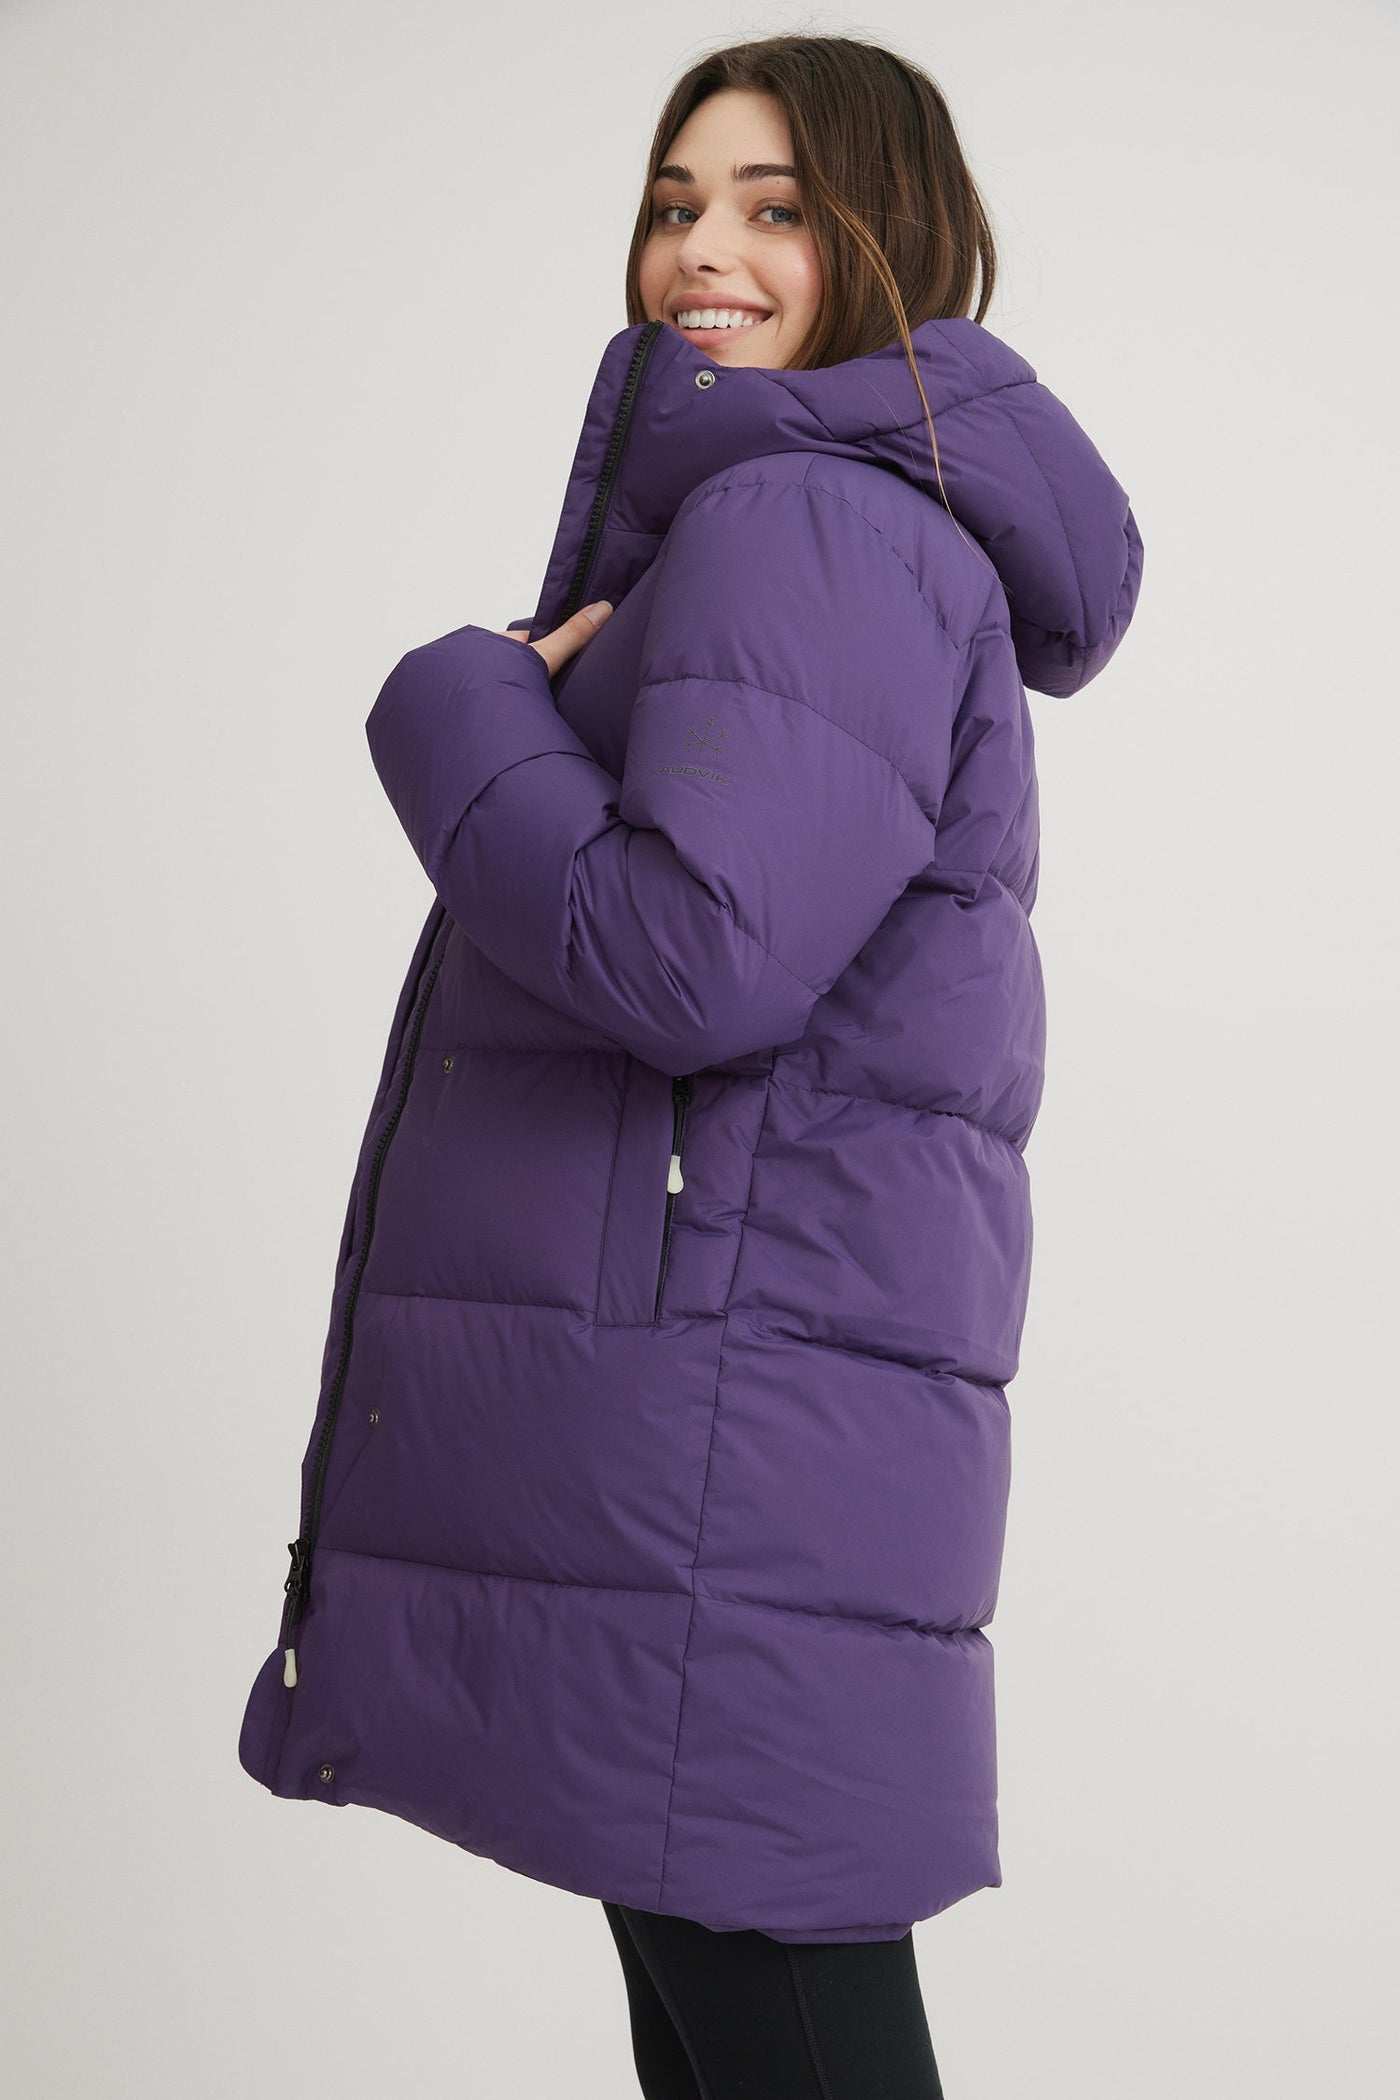 FOSFO LONG - Women's down puffer jacket - AK10050